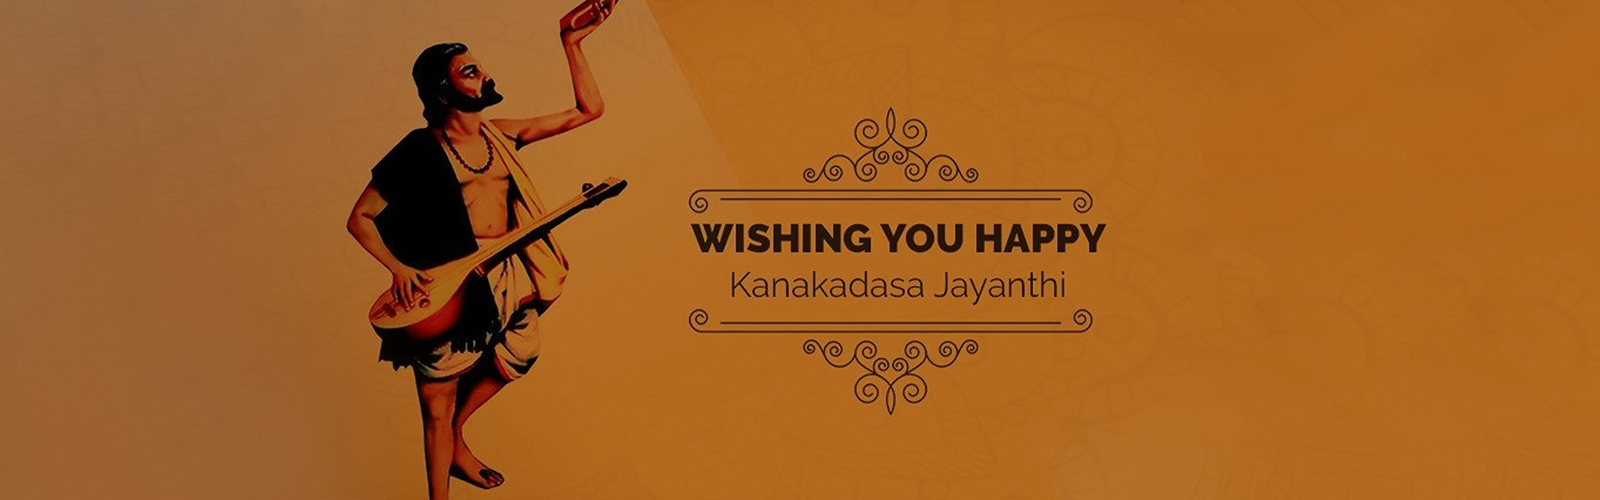 Kanakadasa Jayanthi Festival Celebration 2021 | Karnataka Tourism